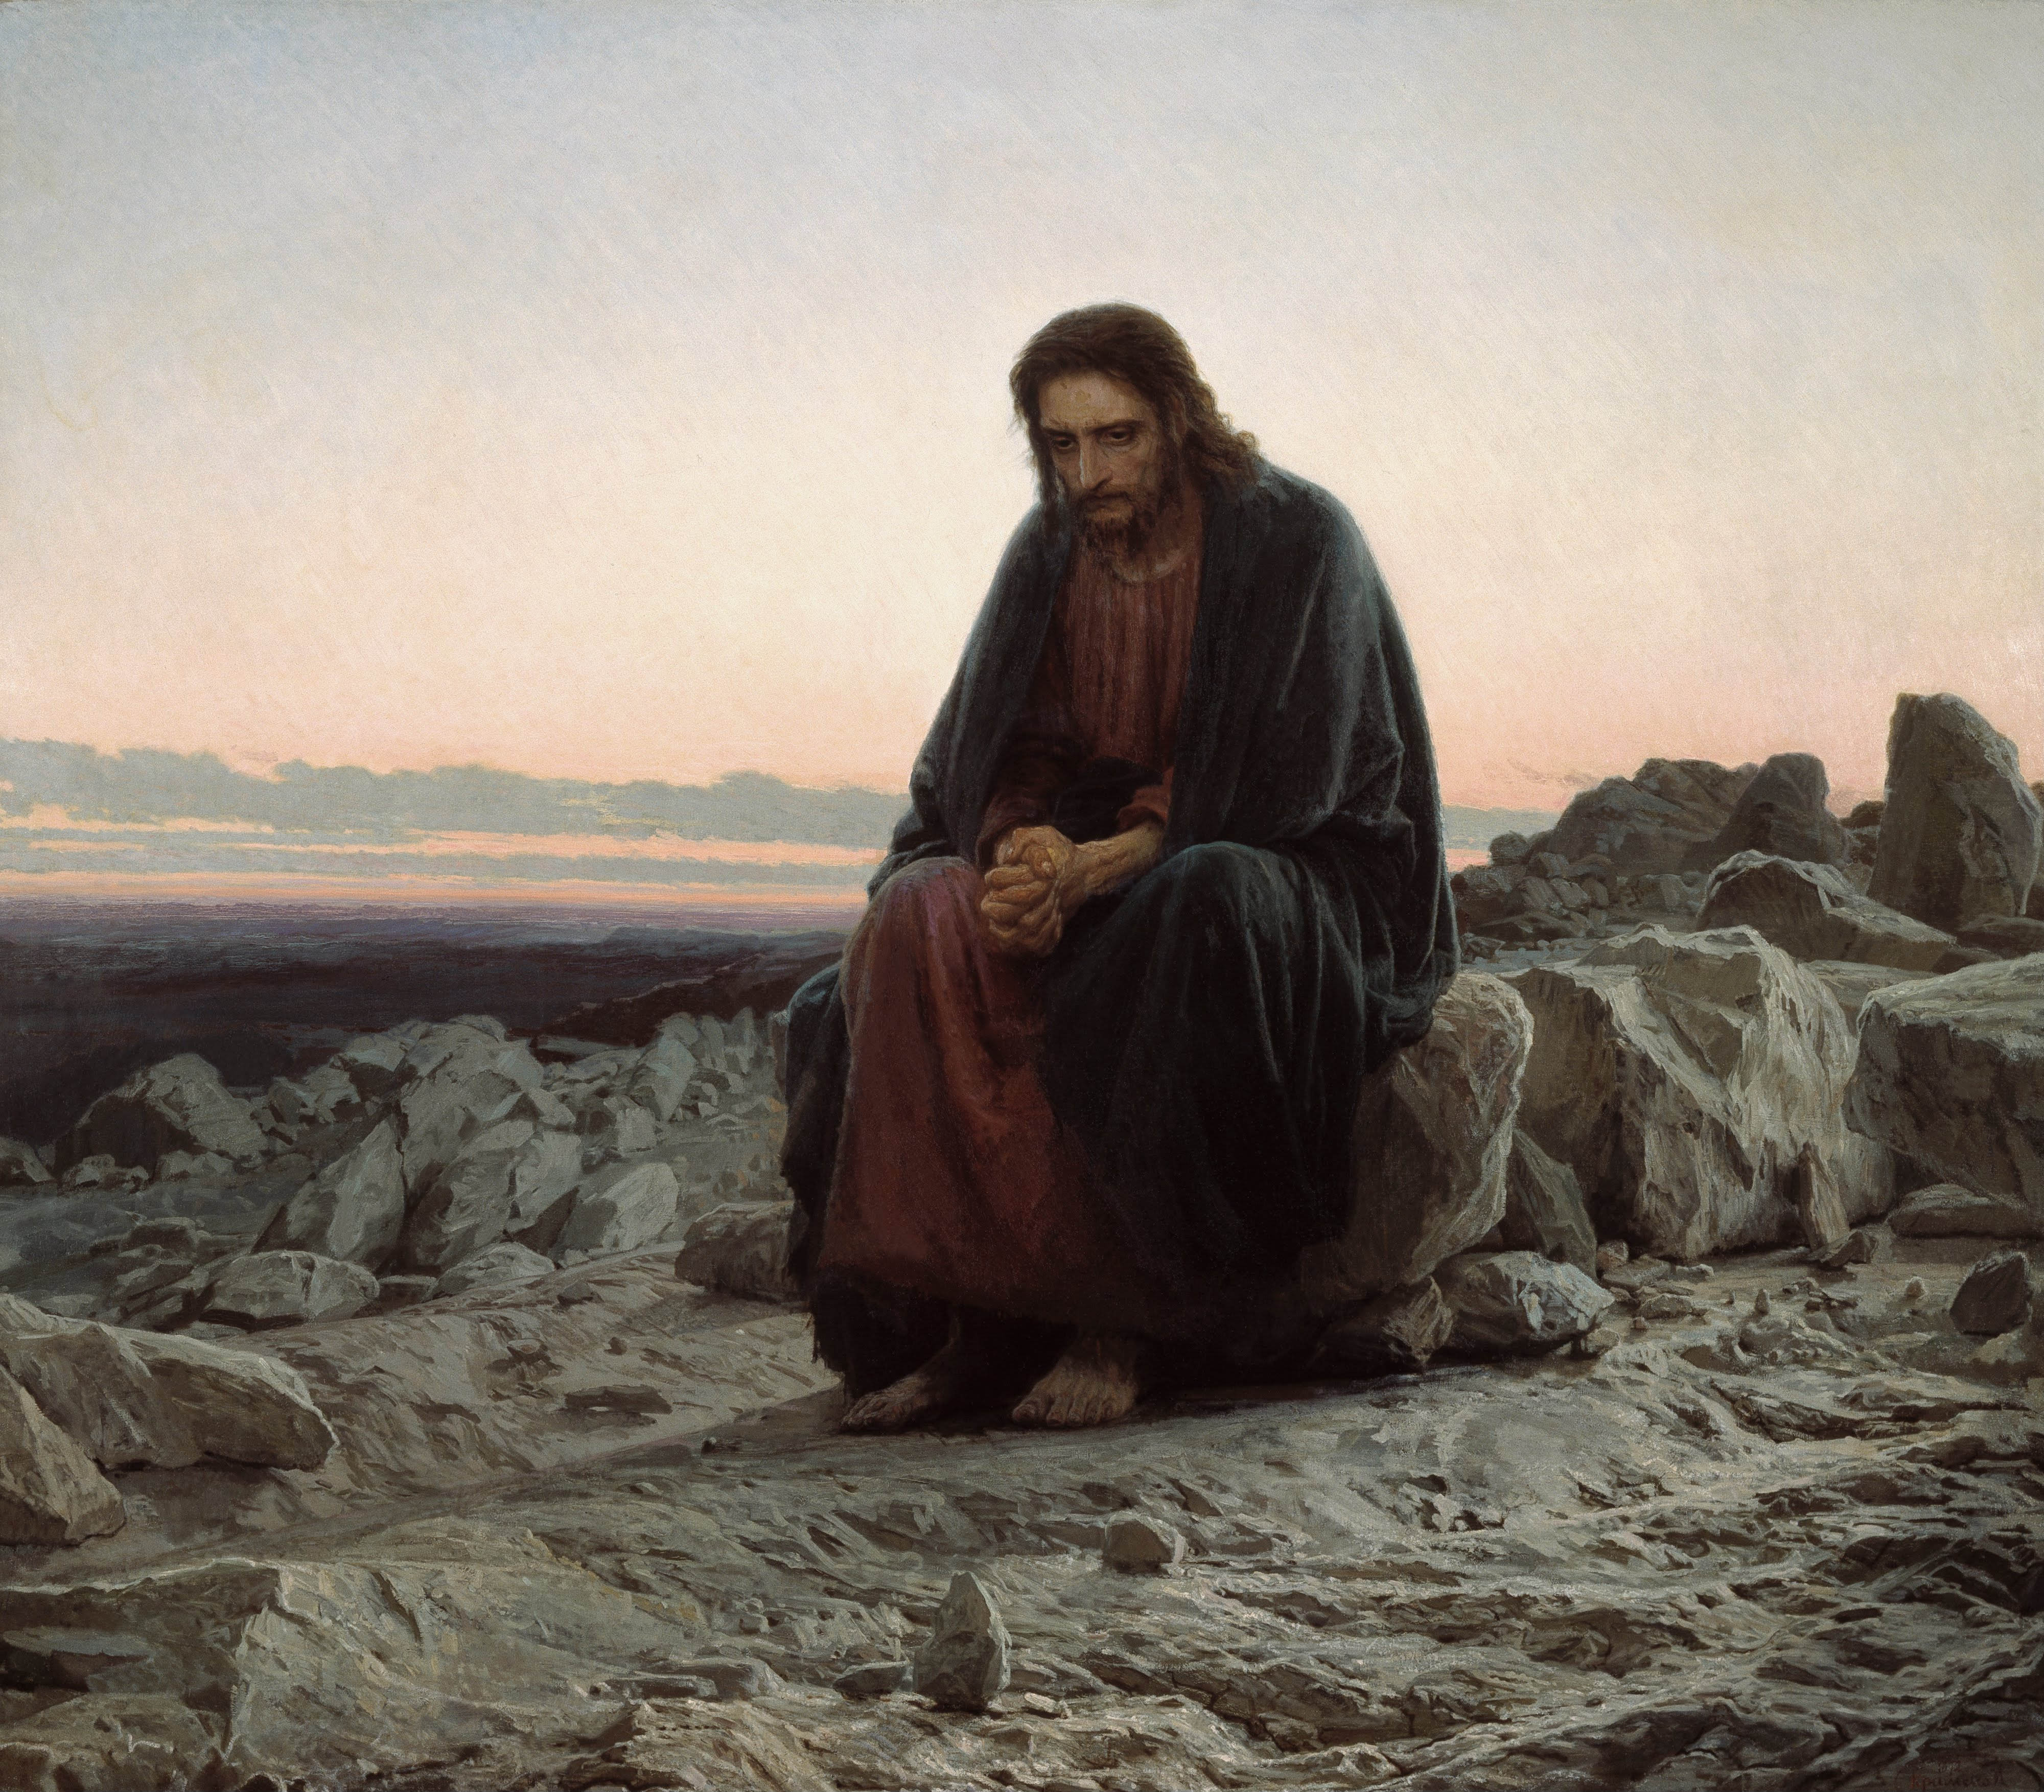 Cristo en el desierto by Ivan Kramskoi - 1872 Galería Estatal Tretiakov